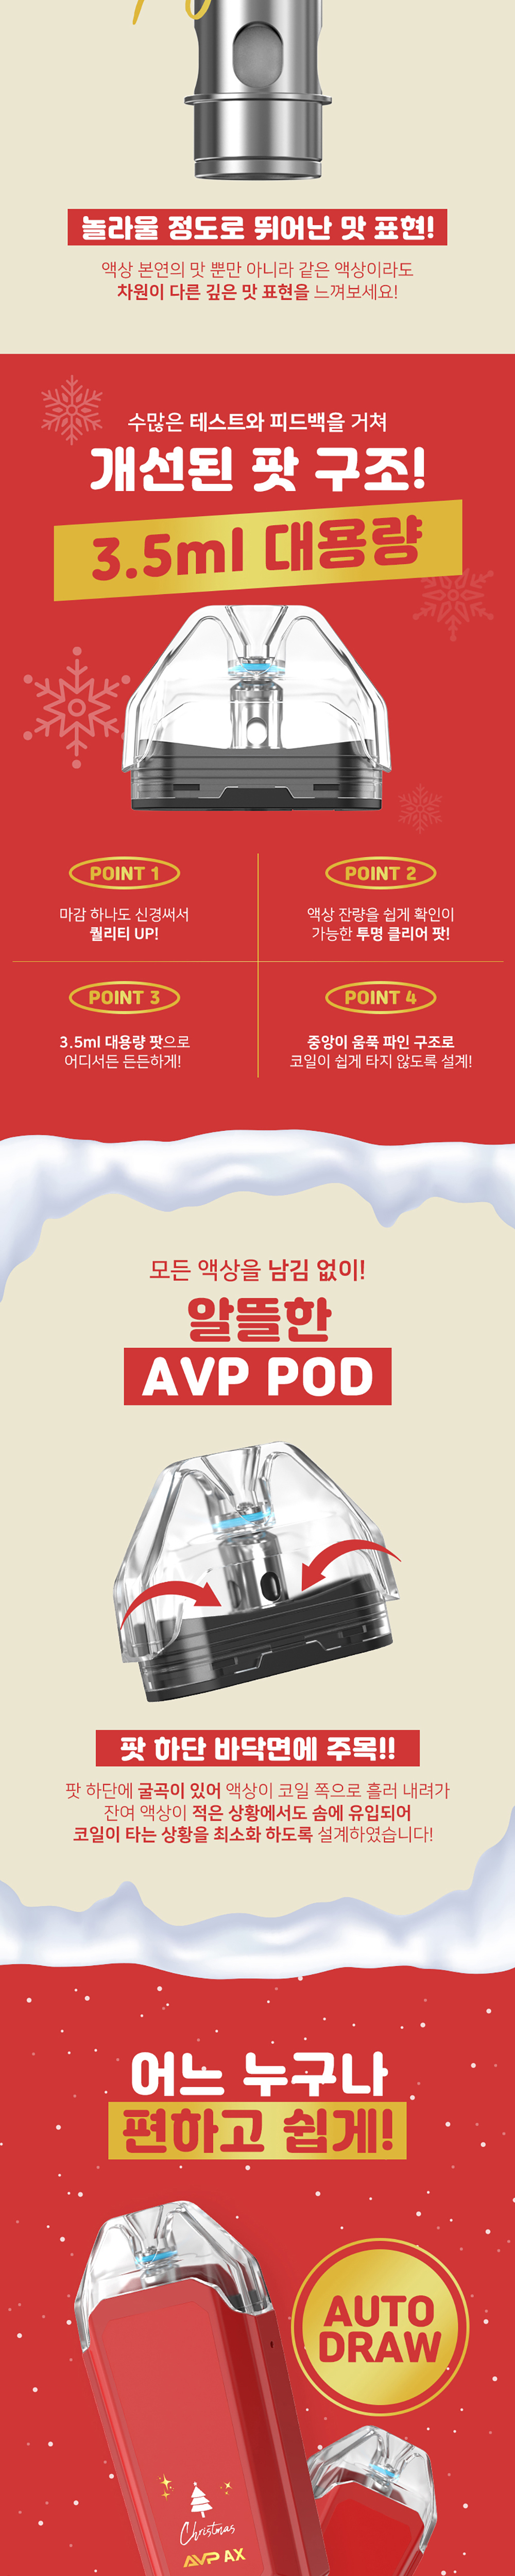 아스파이어 AVP AX 크리스마스 에디션 한정판